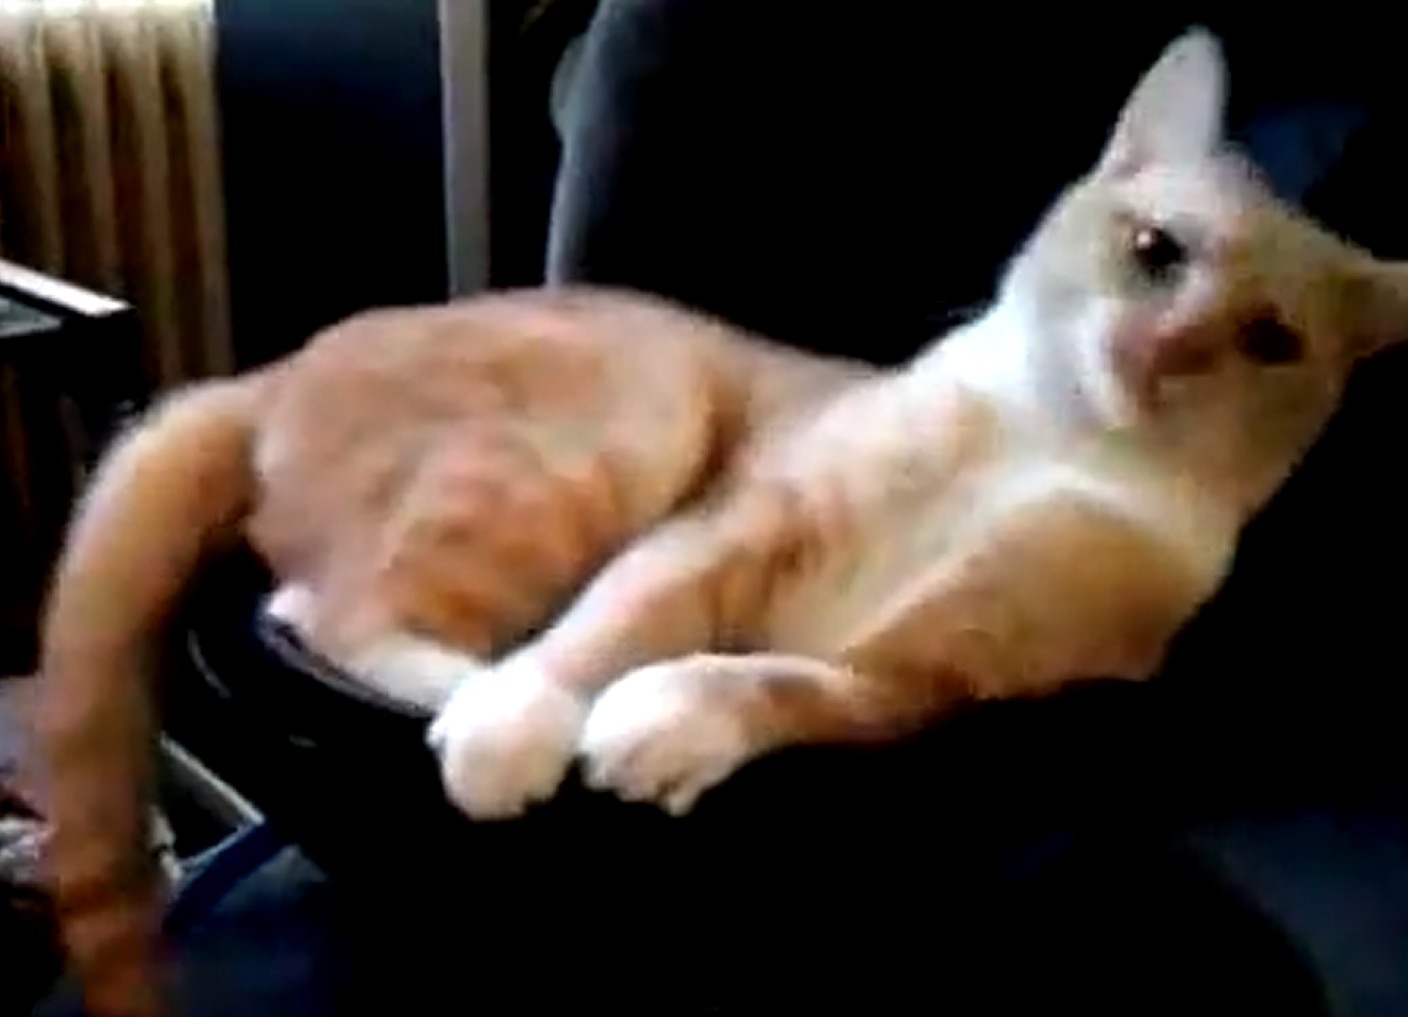 Τι συμβαίνει όταν μια γάτα κάθεται πάνω σε subwoofer;